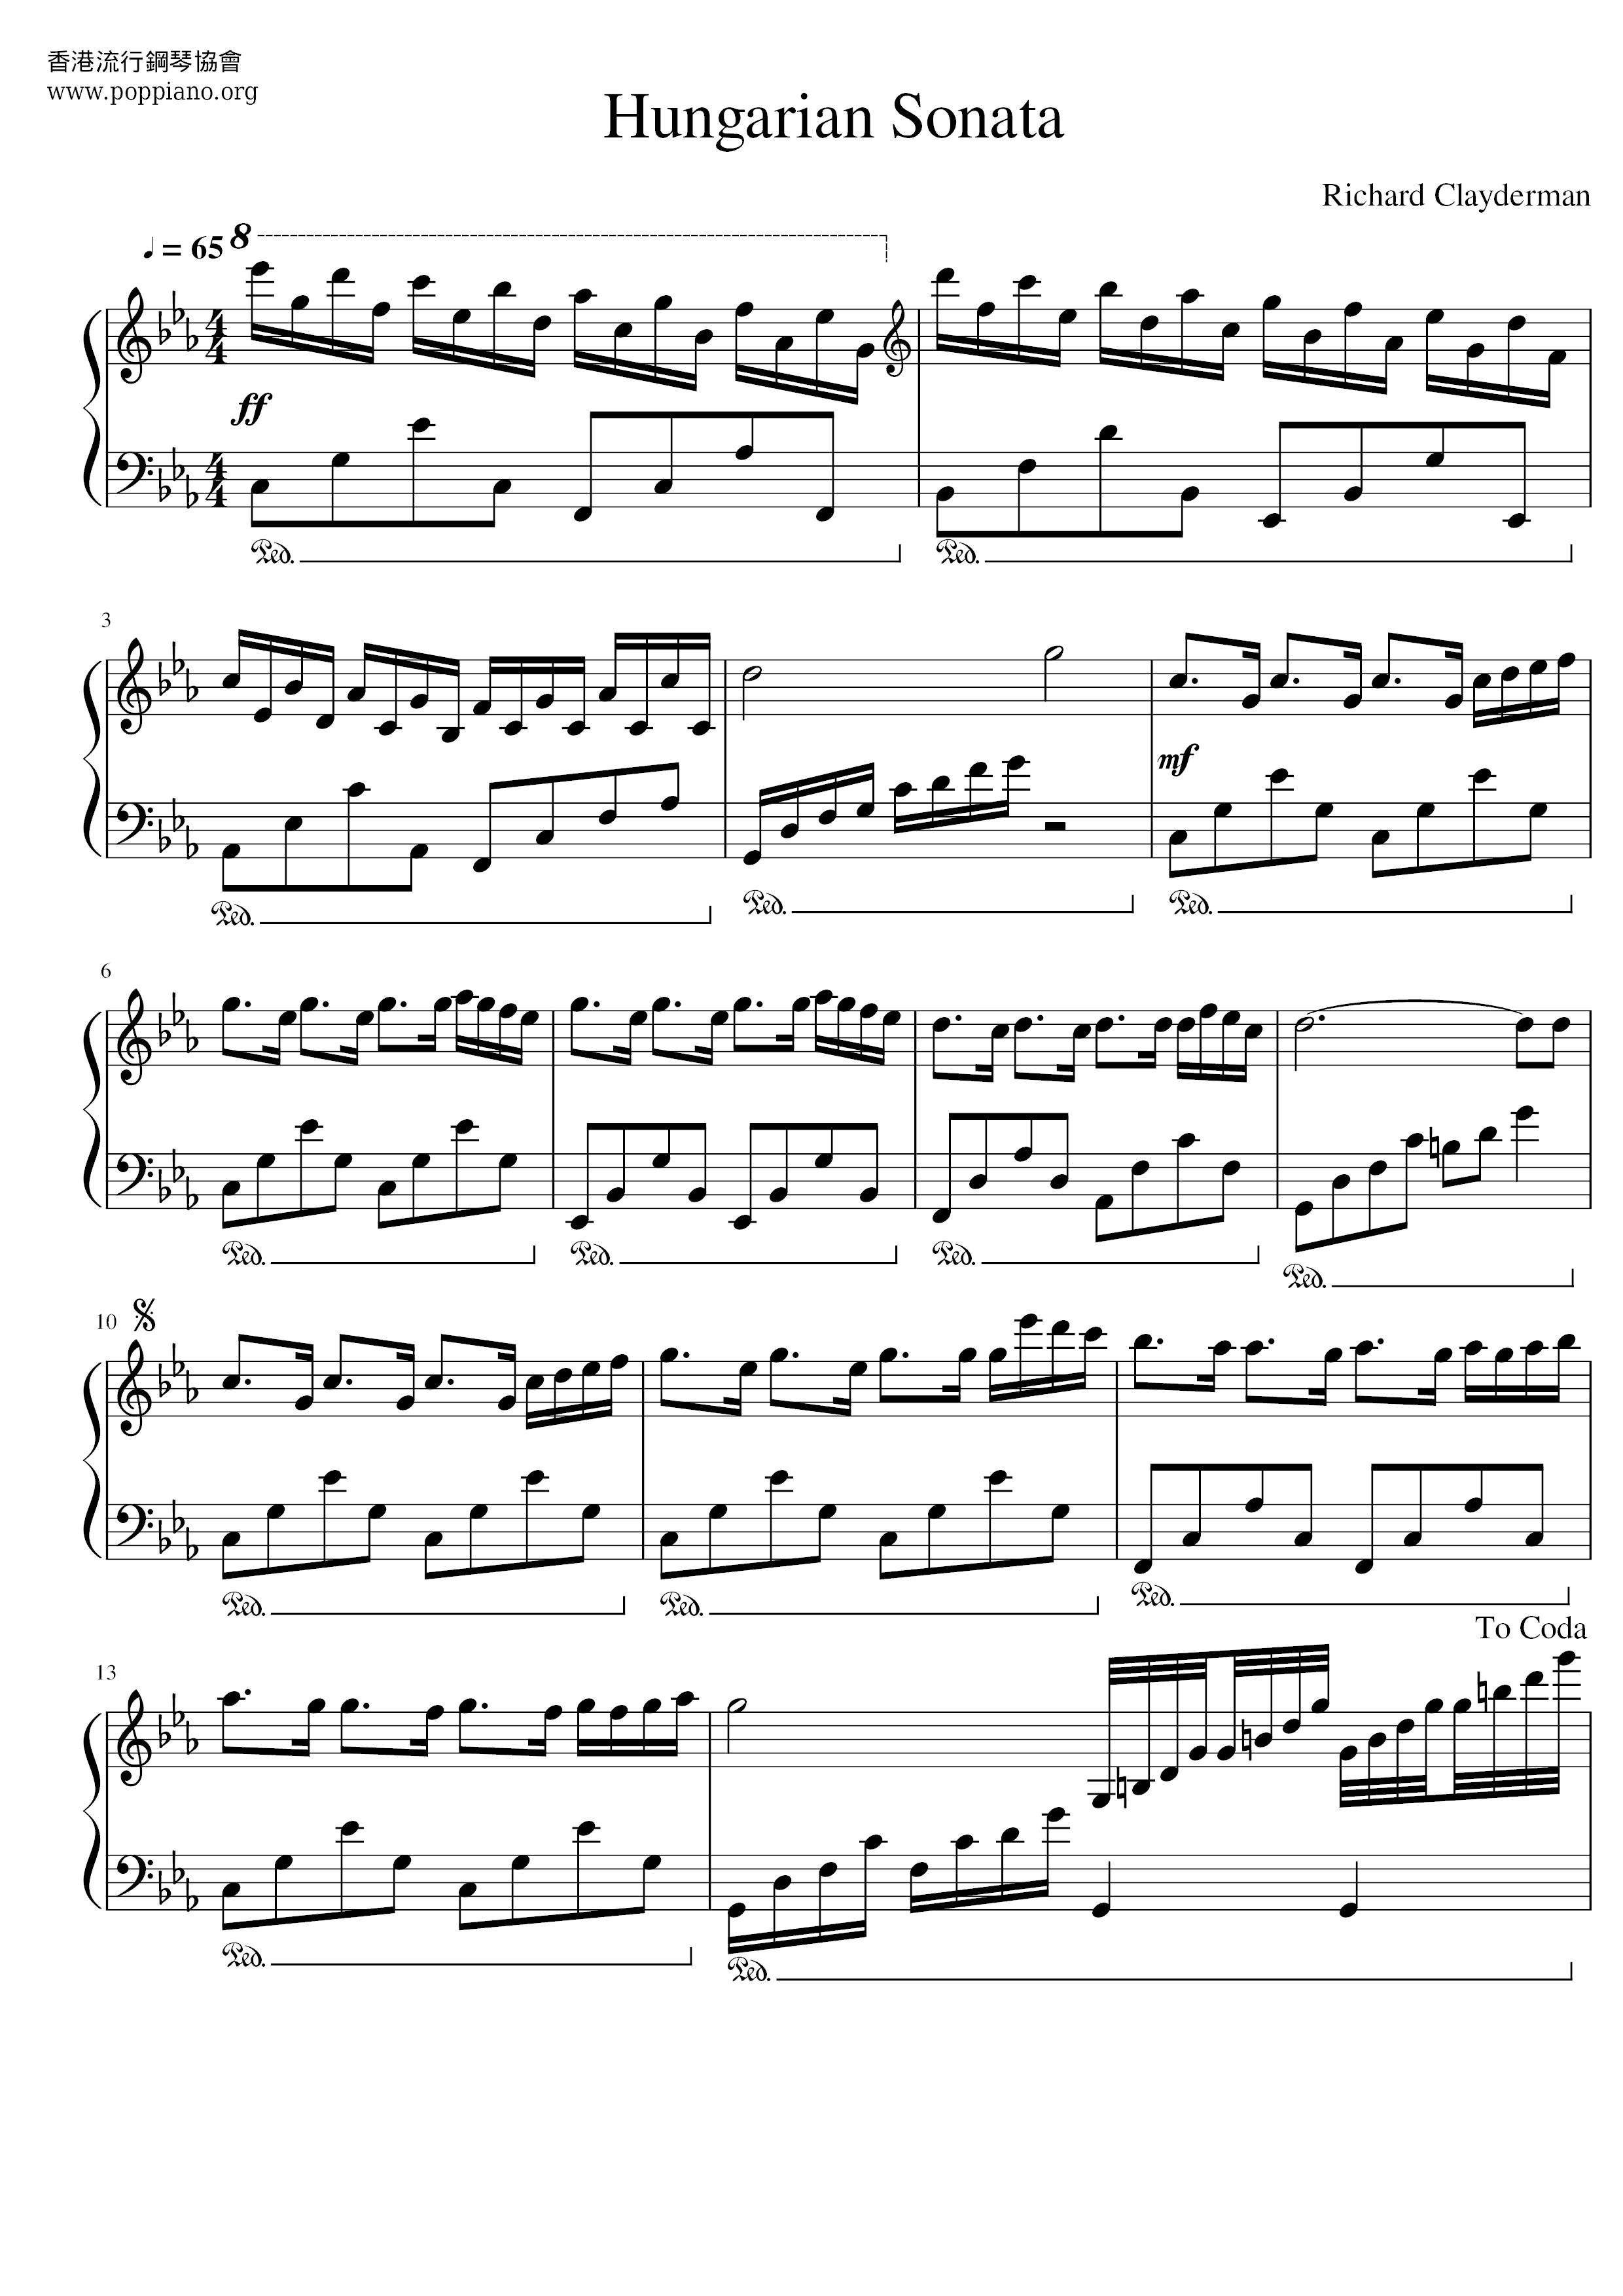 Hungarian Sonataピアノ譜